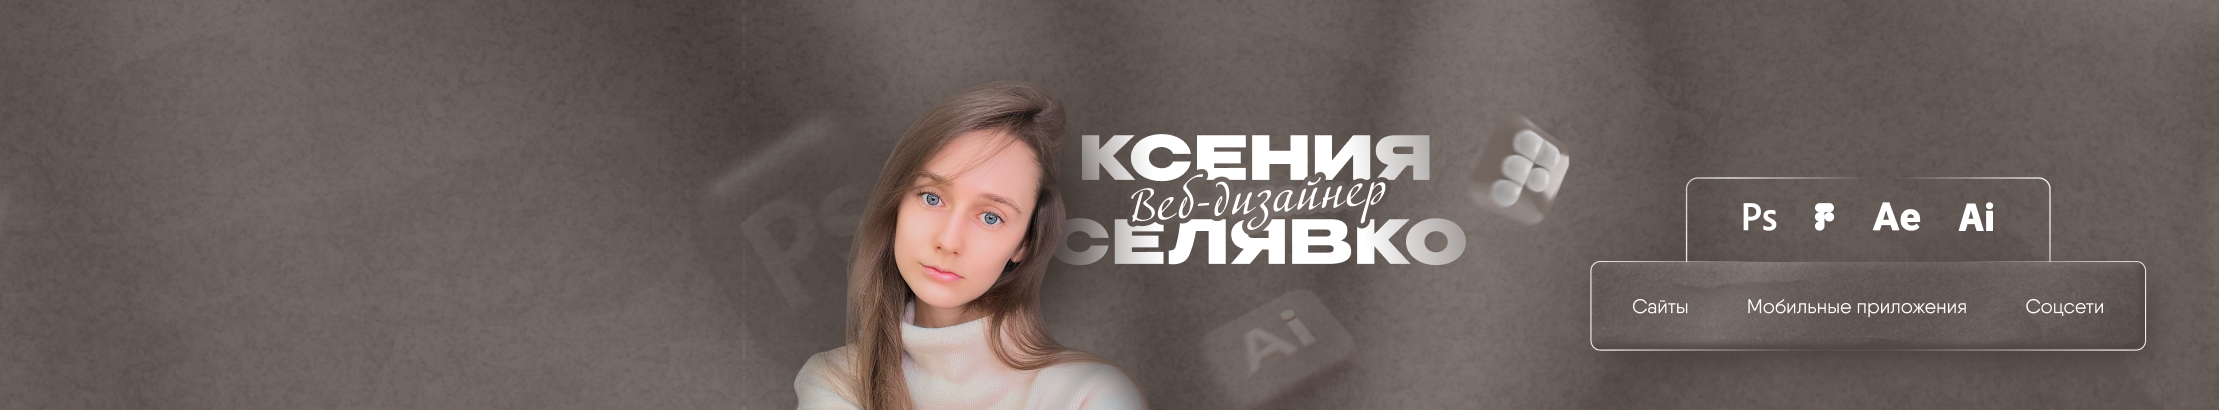 Kseniya Selyavko's profile banner